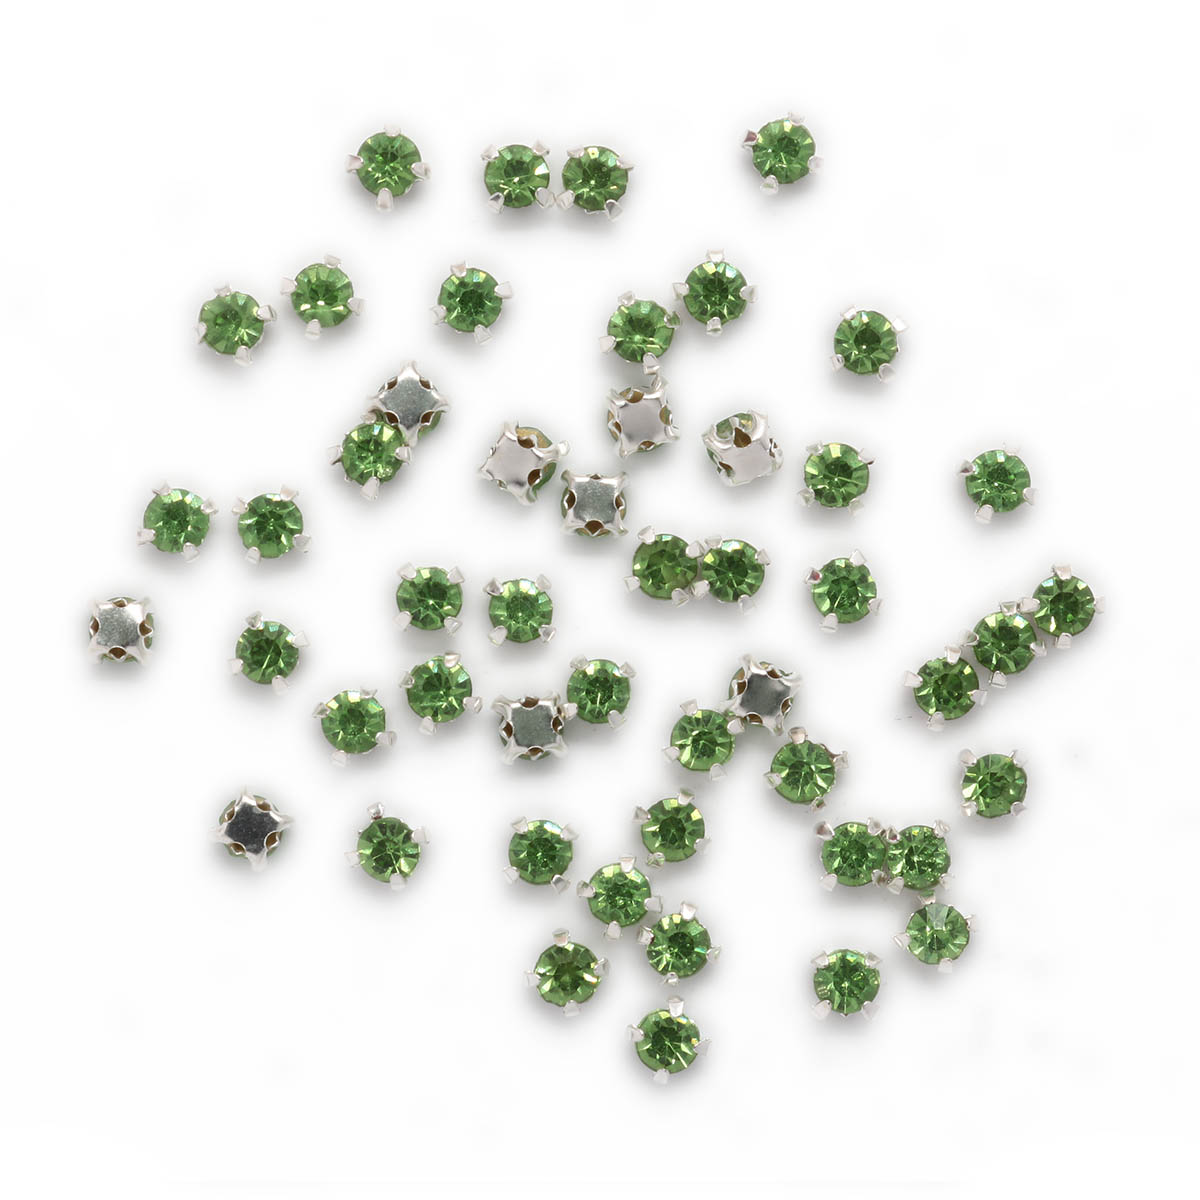 Хрустальные стразы в цапах Astra&Craft (серебро) 4AR159/166, 4мм, 50шт (06 светло-зеленый)